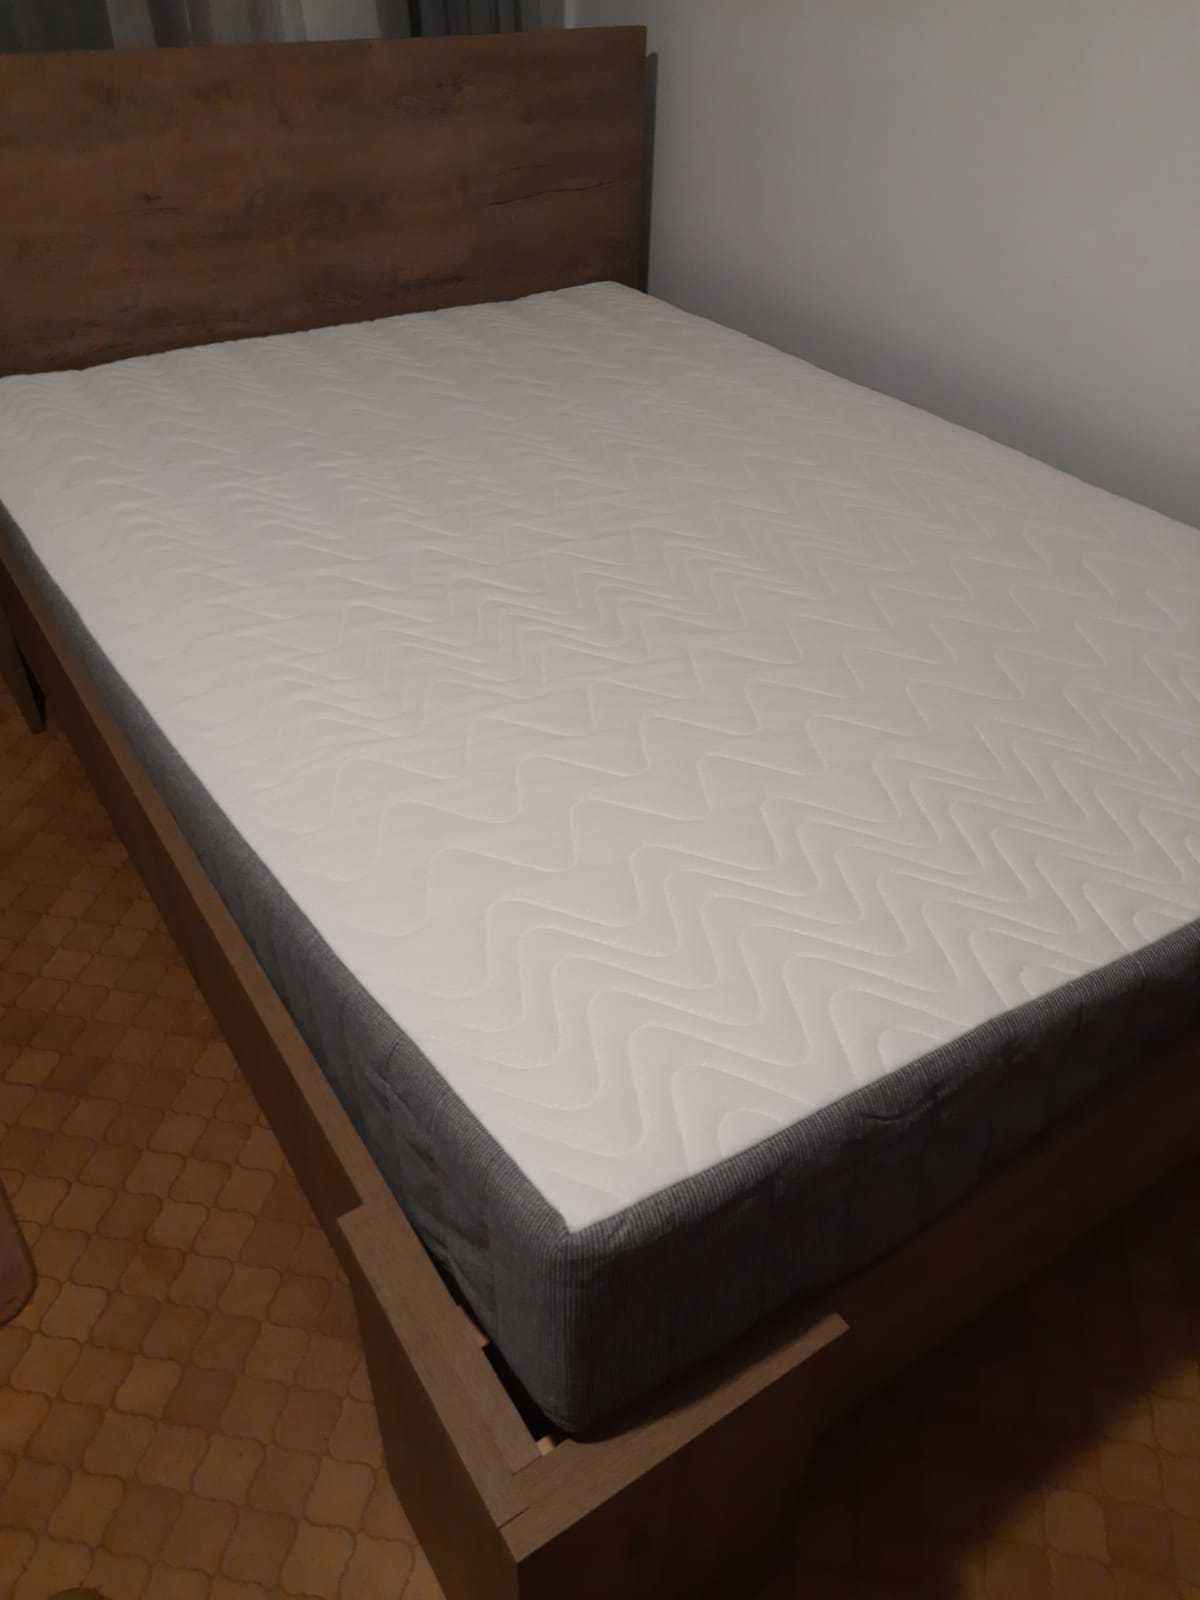 Łóżko  140/200 z materacem , złożone i nie używane